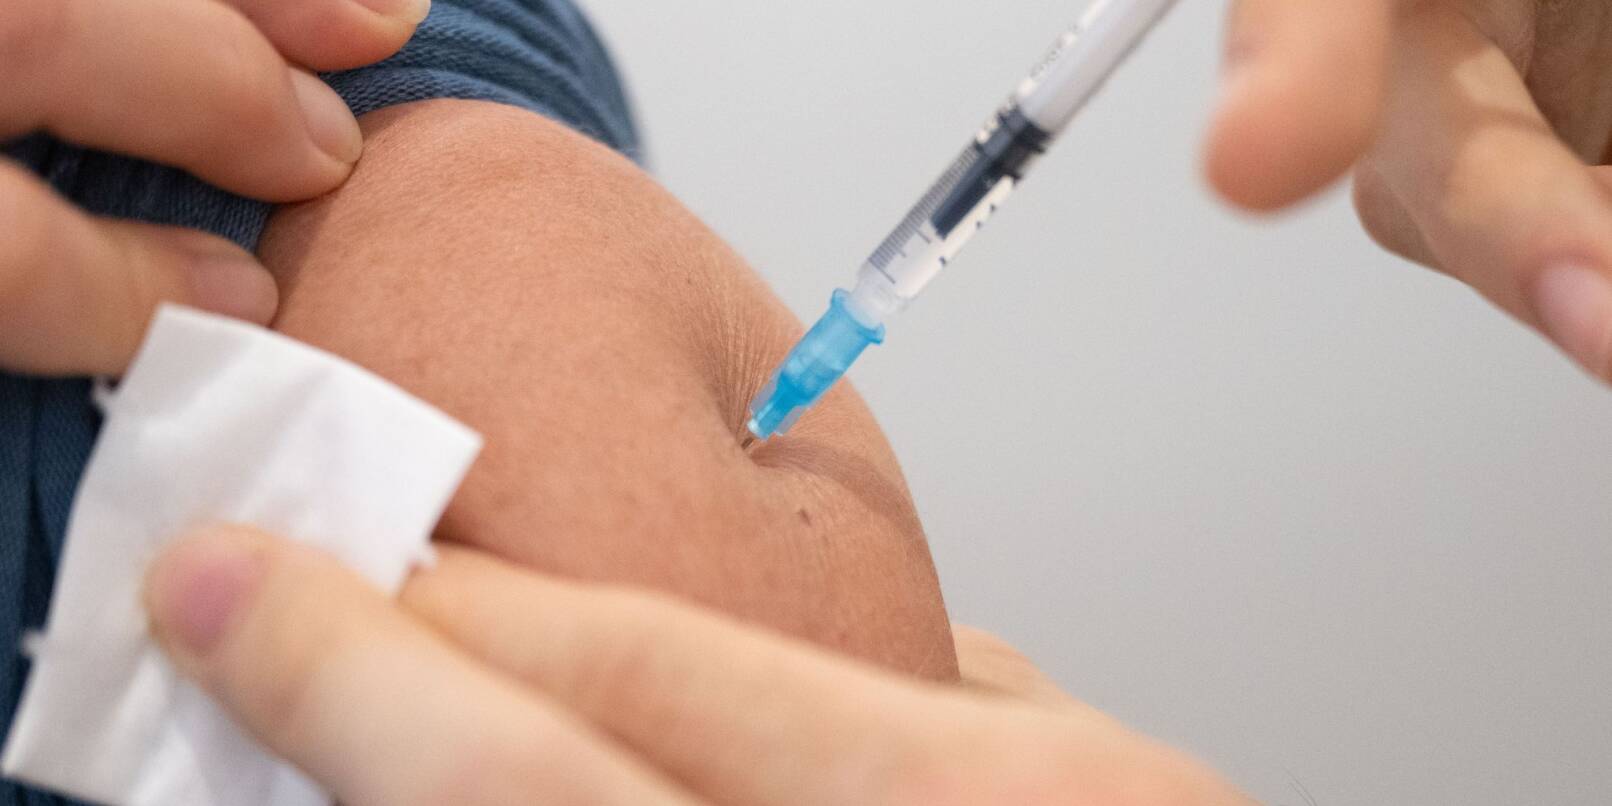 Ein an neue Varianten angepasster Corona-Impfstoff wird voraussichtlich ab dem 18. September in Arztpraxen und Apotheken erhältlich sein.